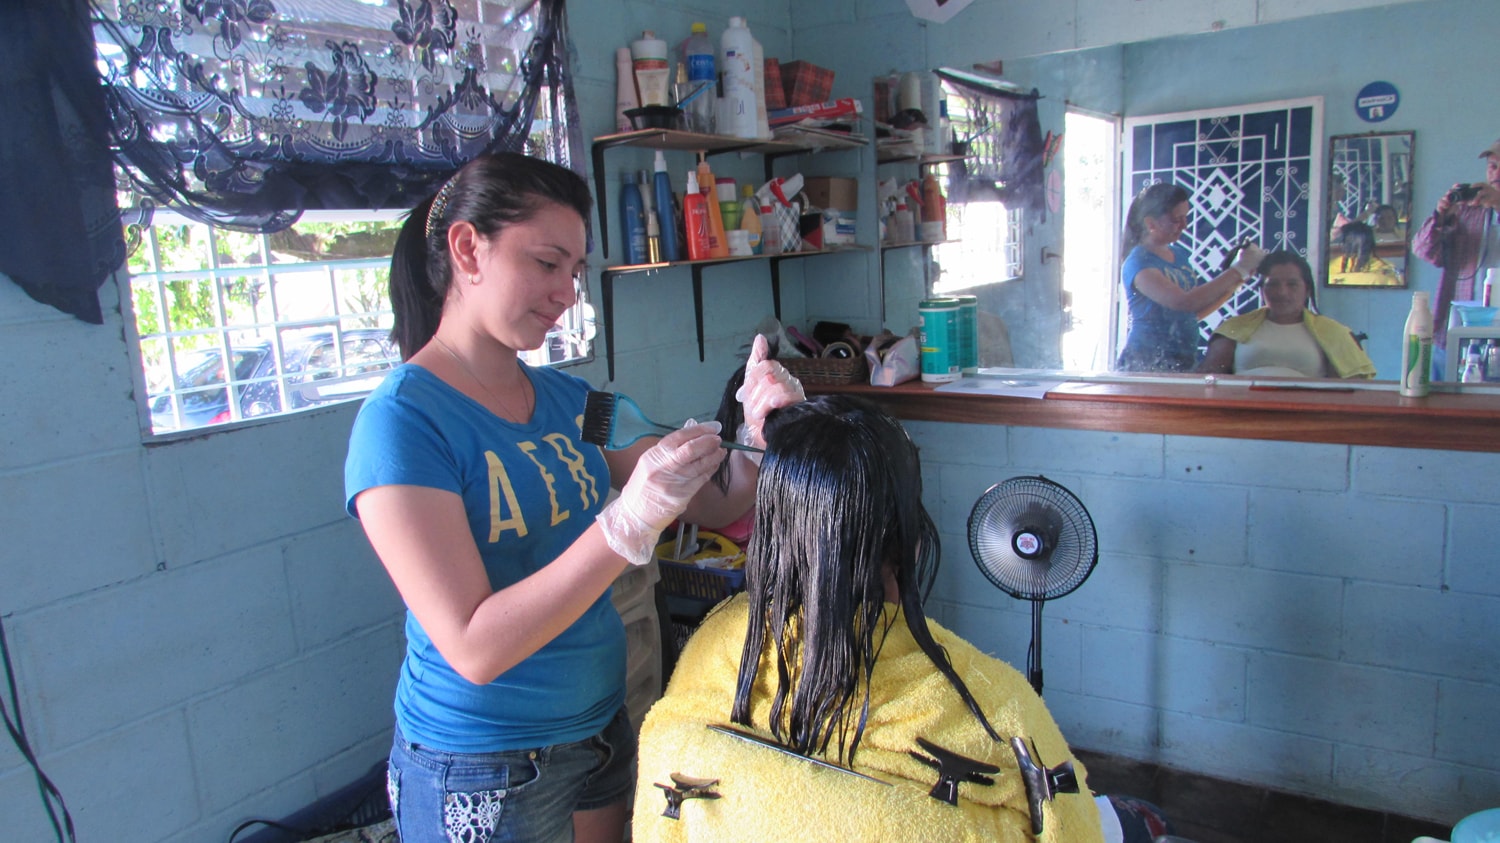 Eine junge Frau färbt Haare in einem Haar-Studio.